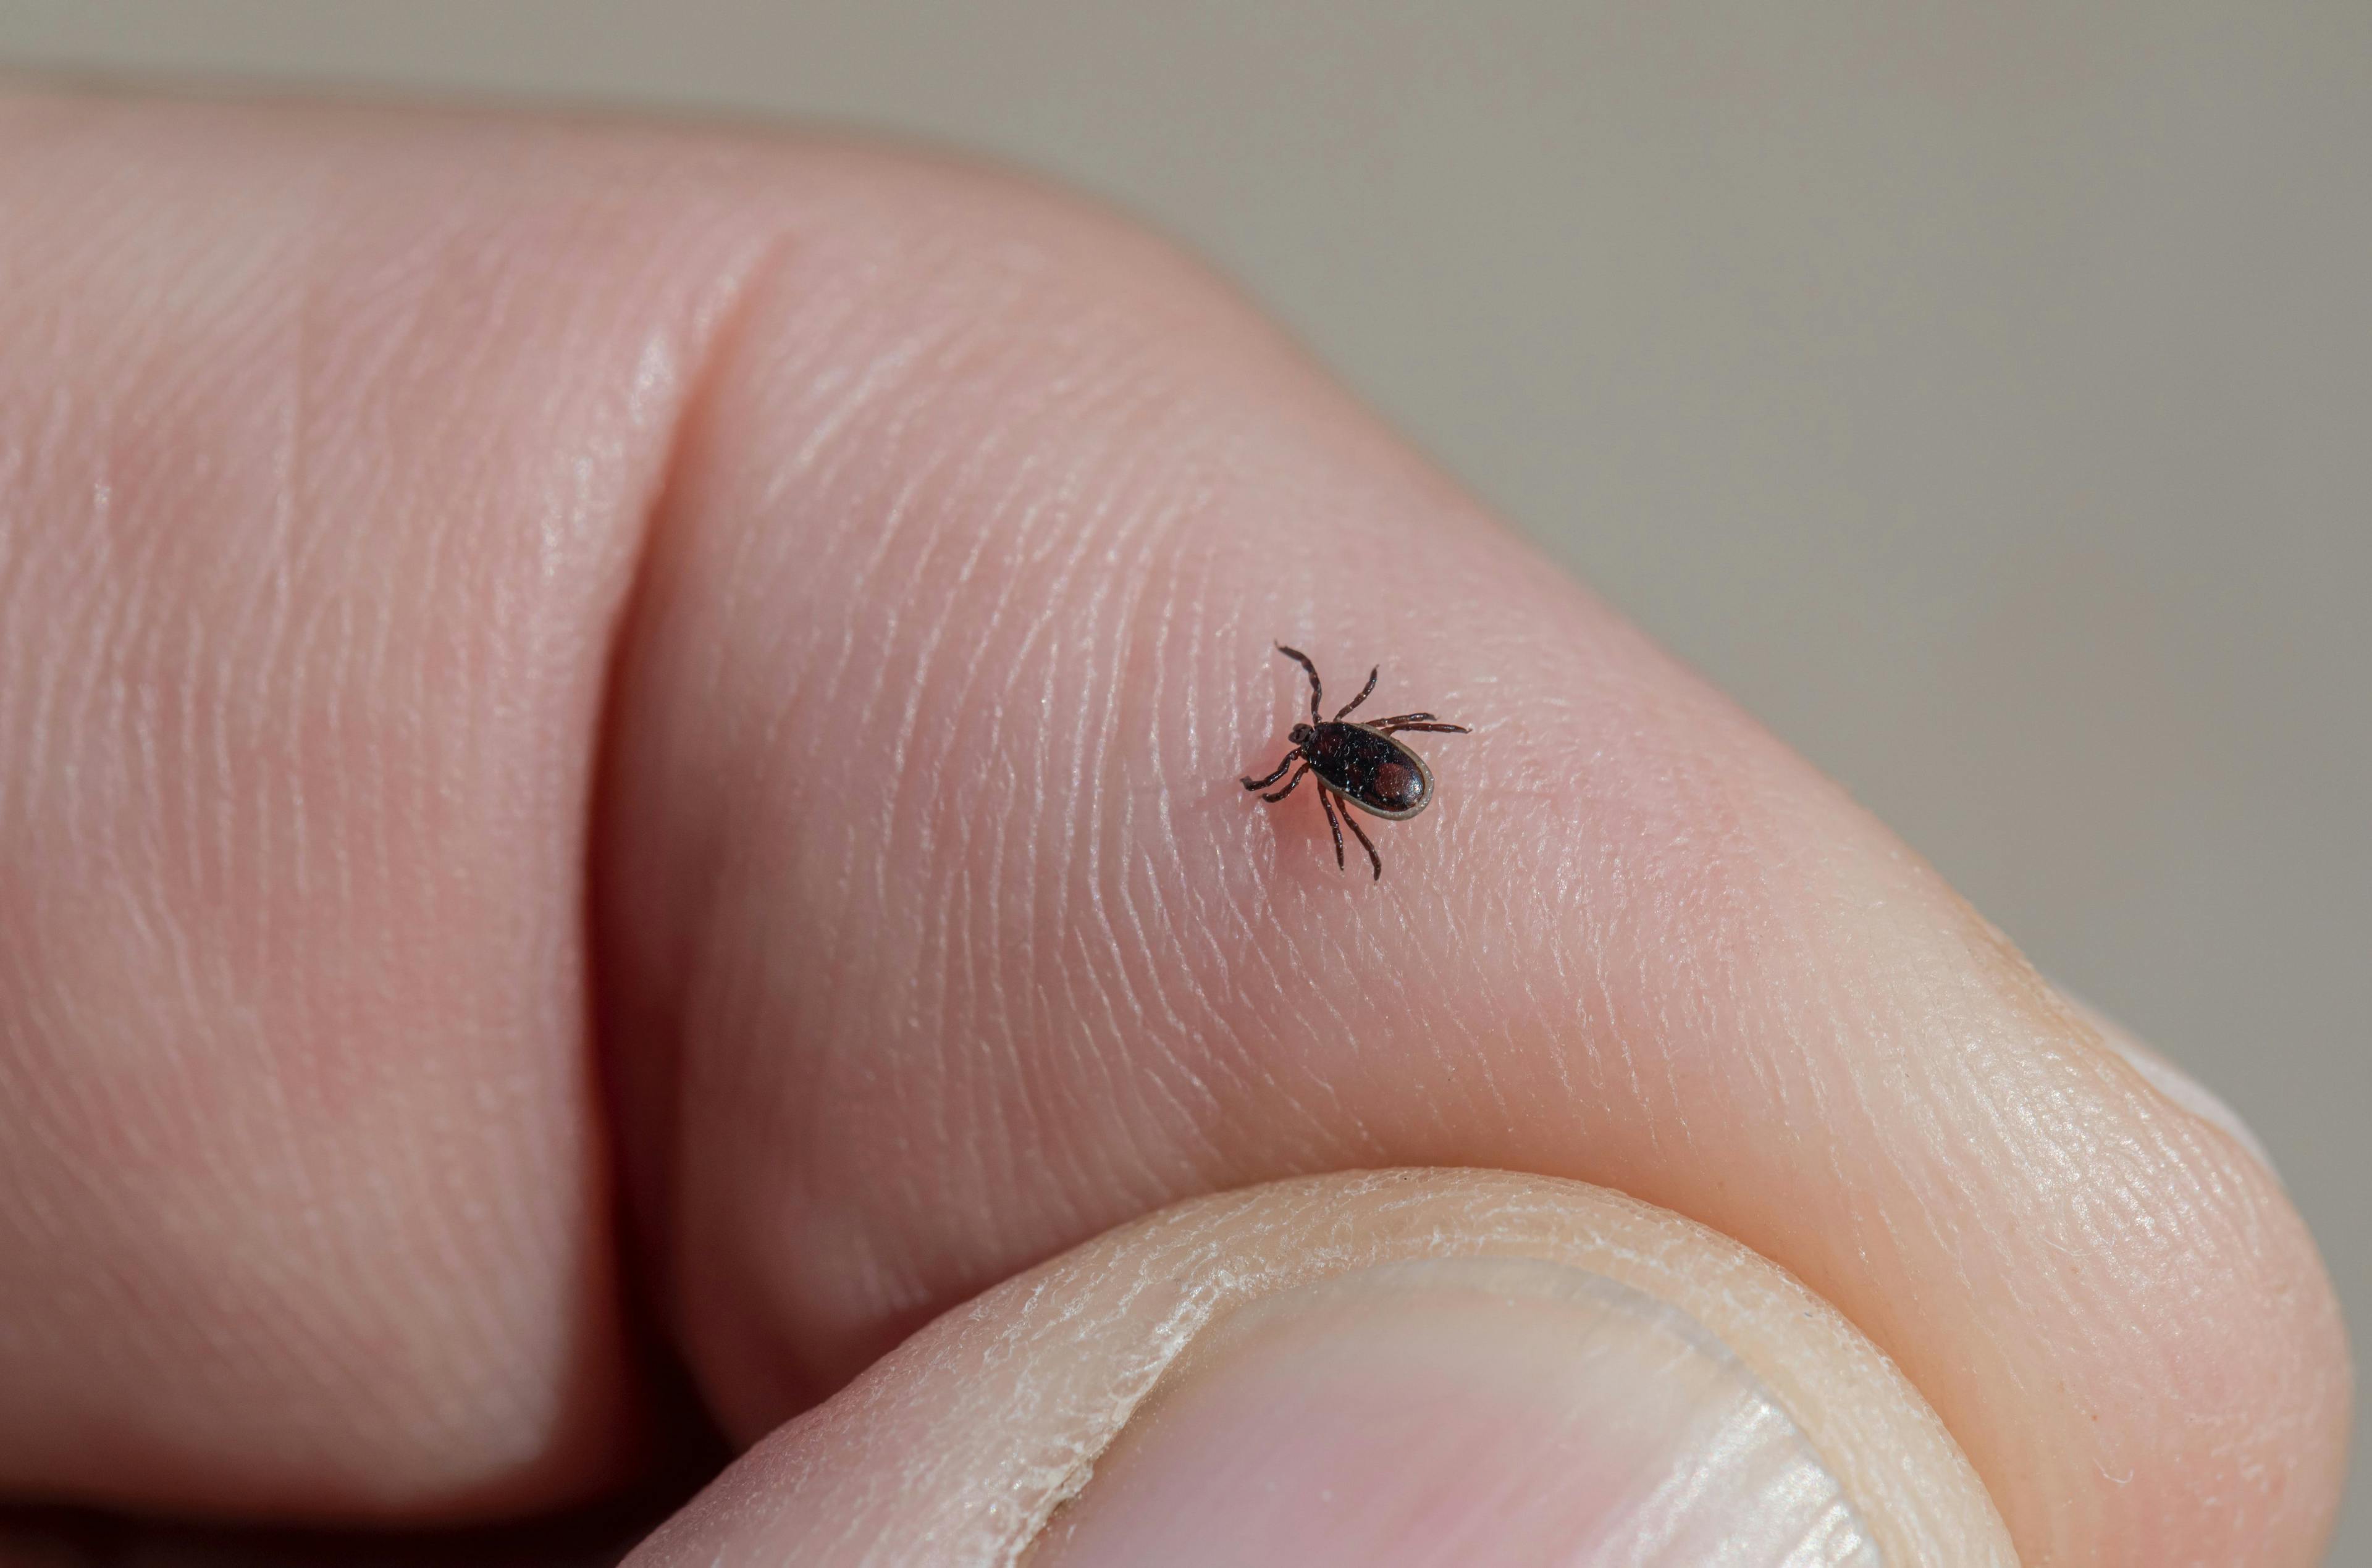 Lyme Disease: Has it Been Underreported? 